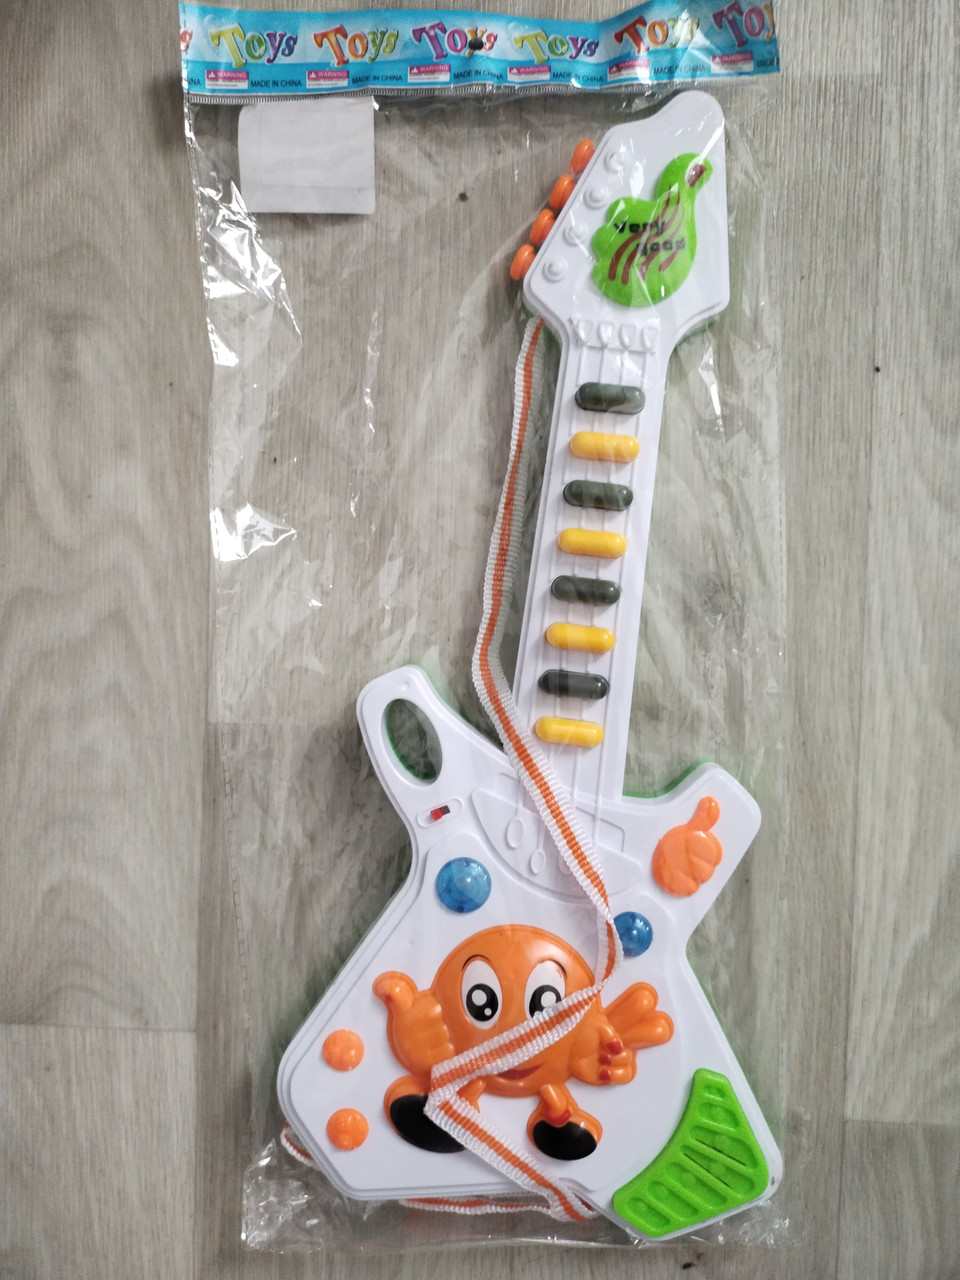 Іграшка гітара для дітей - довжина 41см, ширина 18см, пластик, елементи живлення в комплект не входять